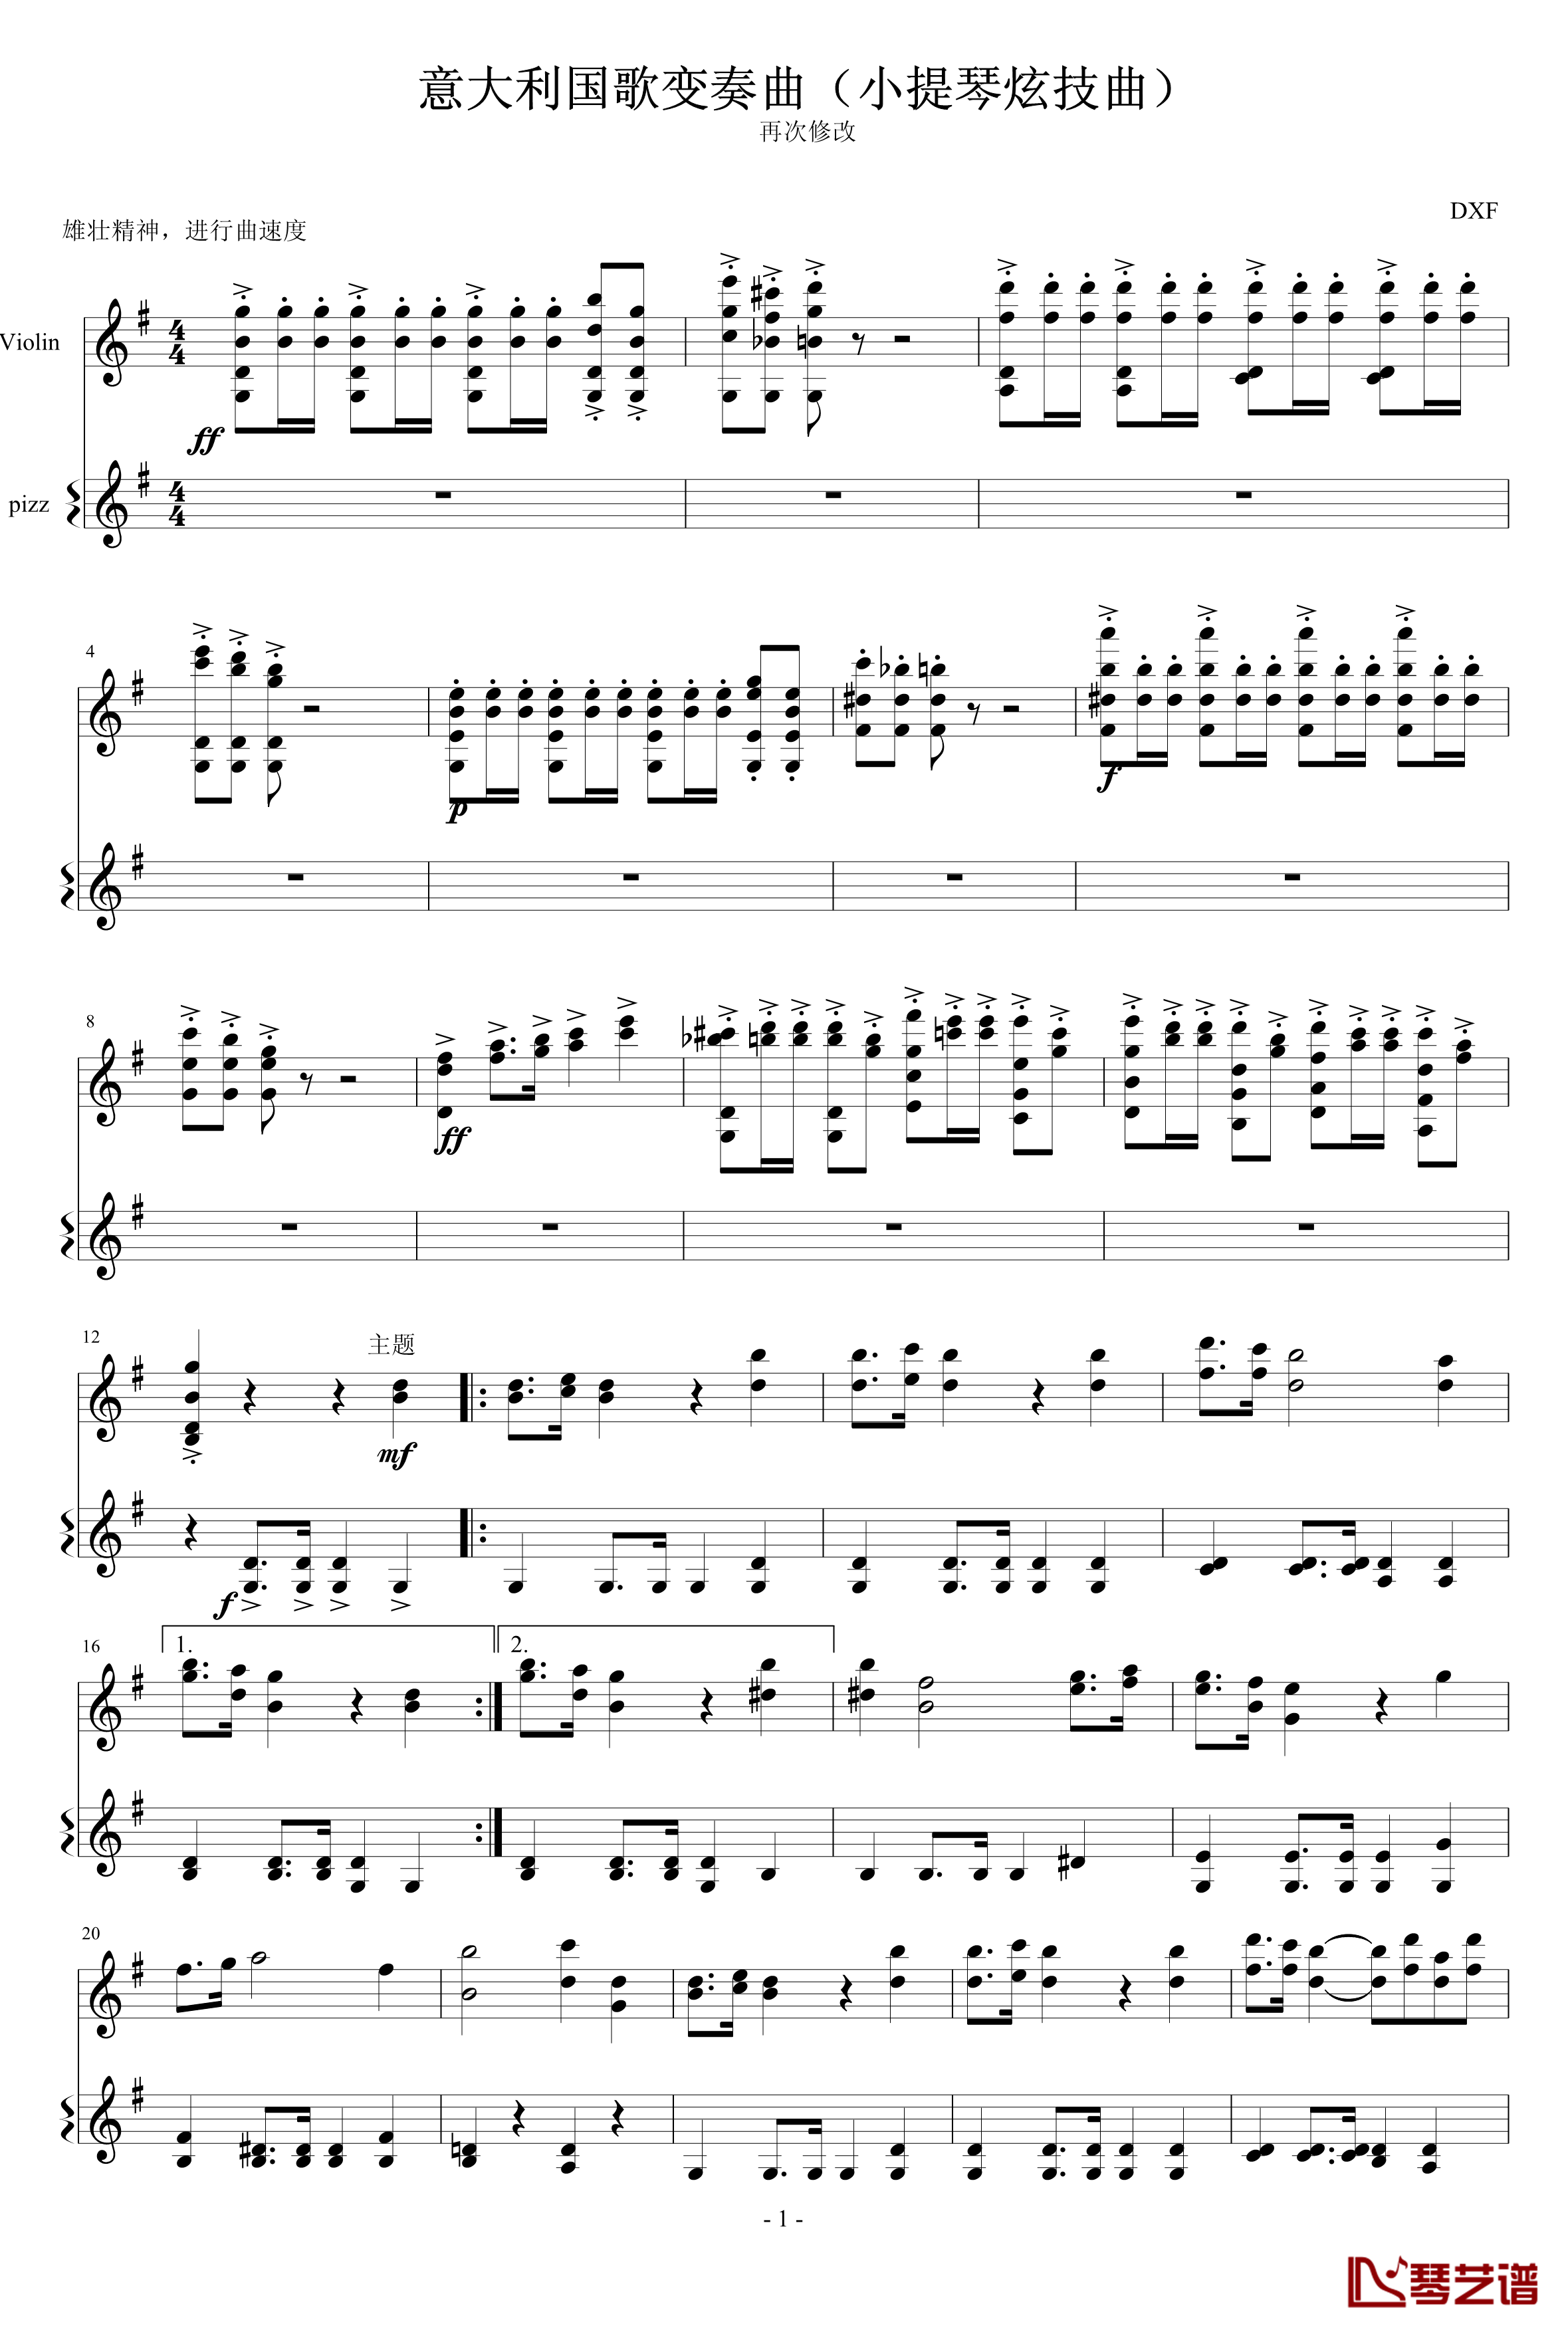 意大利国歌变奏曲钢琴谱-只修改了一个音-DXF1